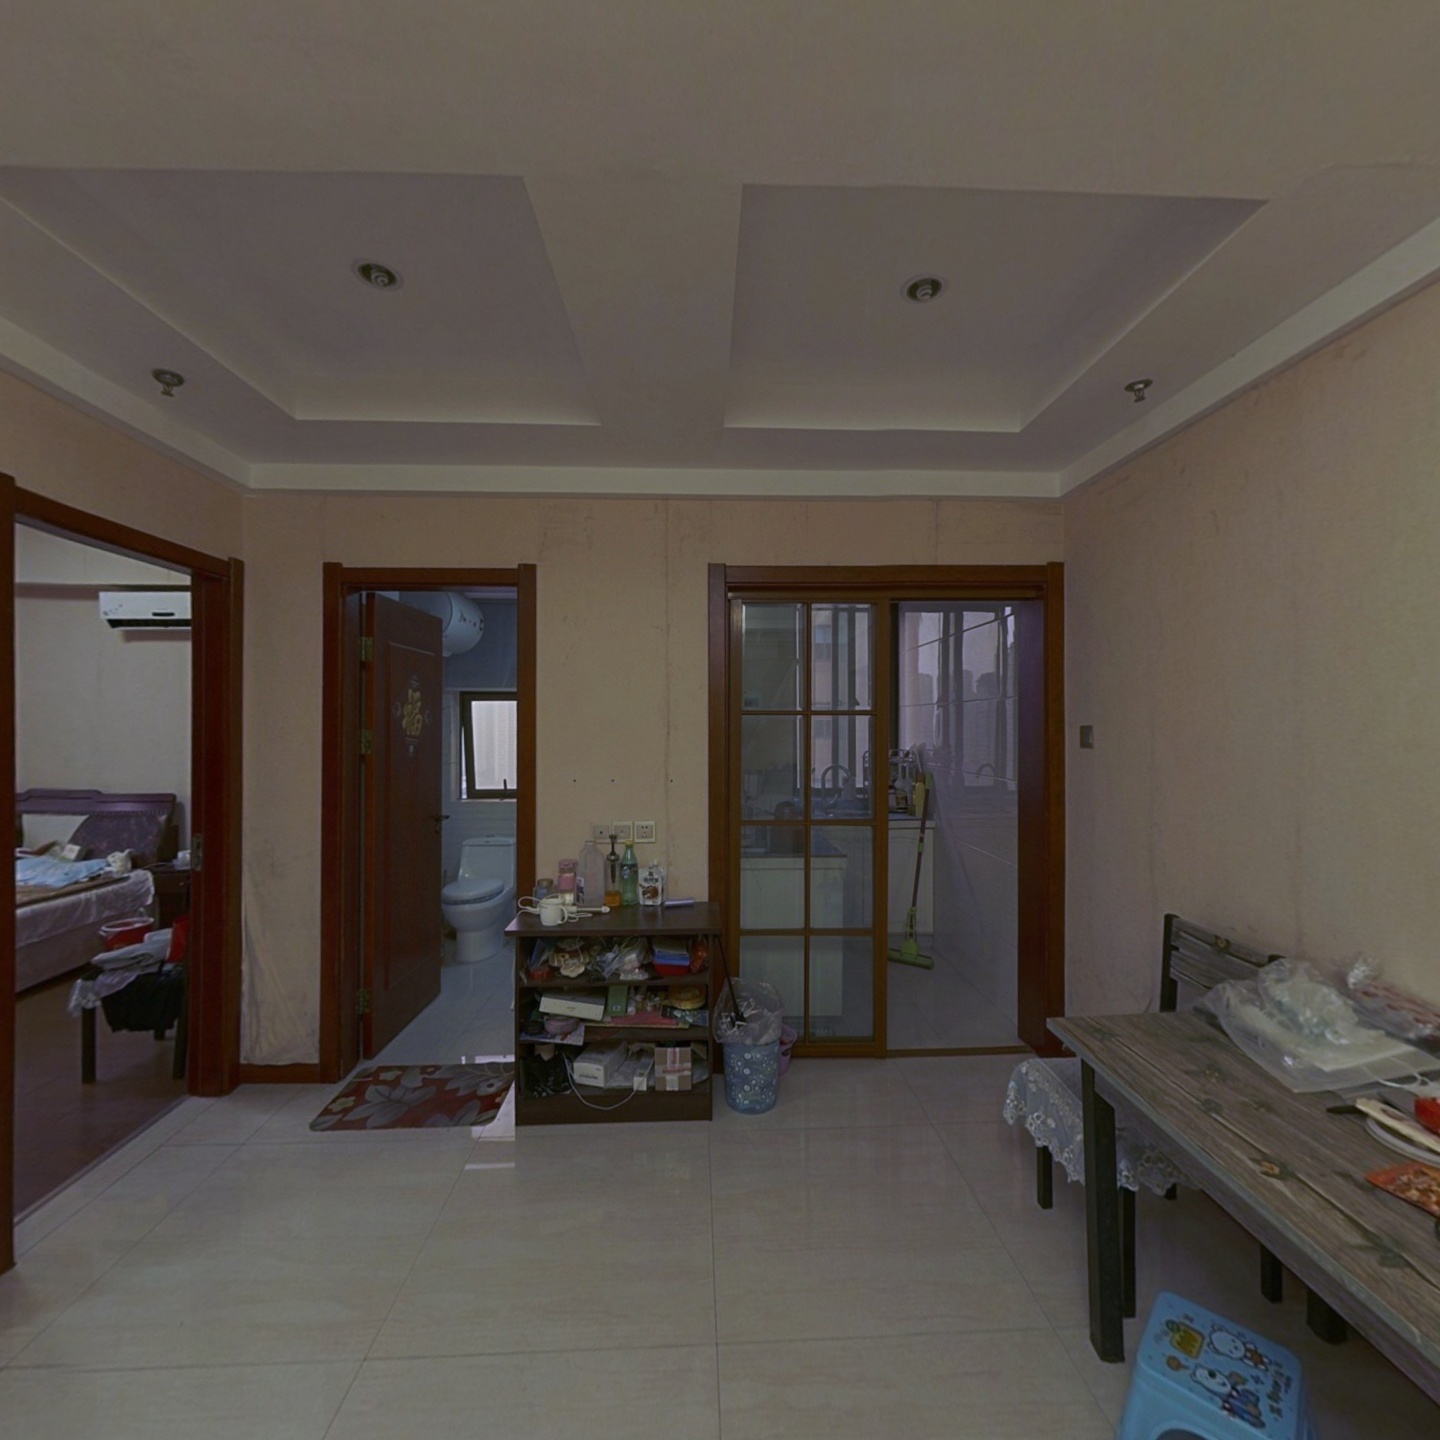 梦想公寓2房1厅户型，47.5万。杭州湾超低价。